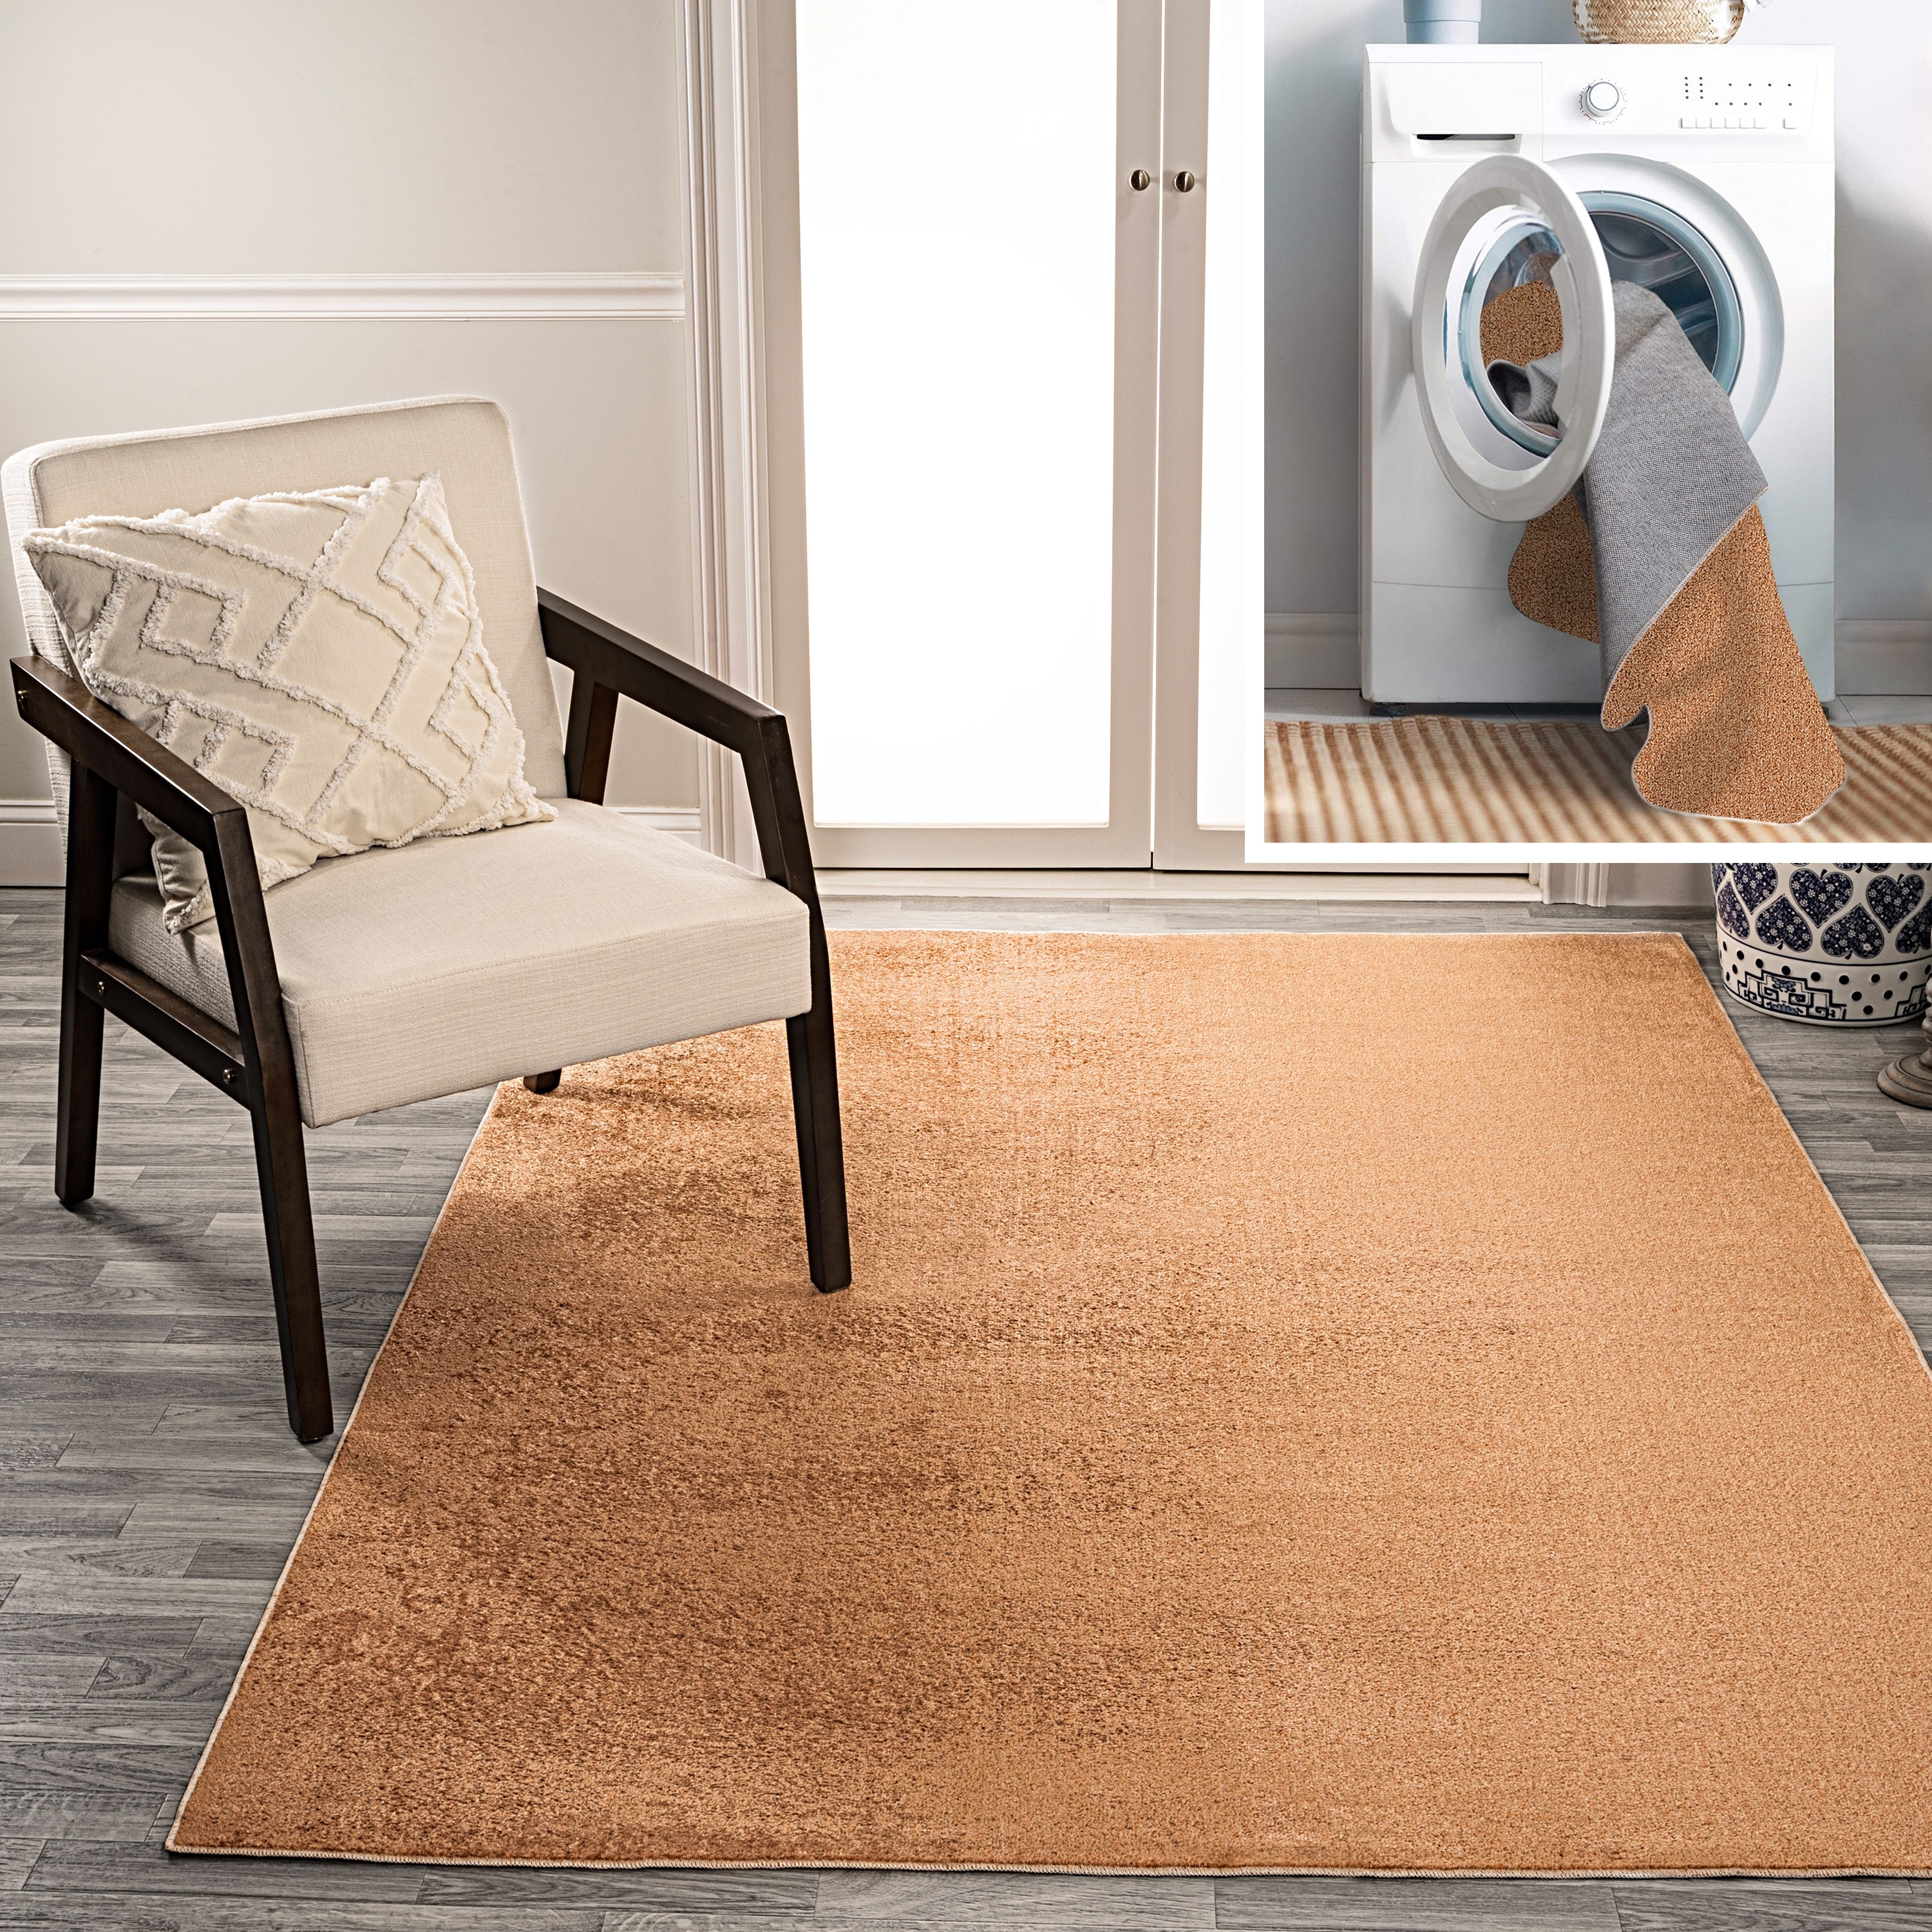 Loni Solid Machine Washable Shag Area Rug  Light grey rug, Shag area rug,  Area rugs